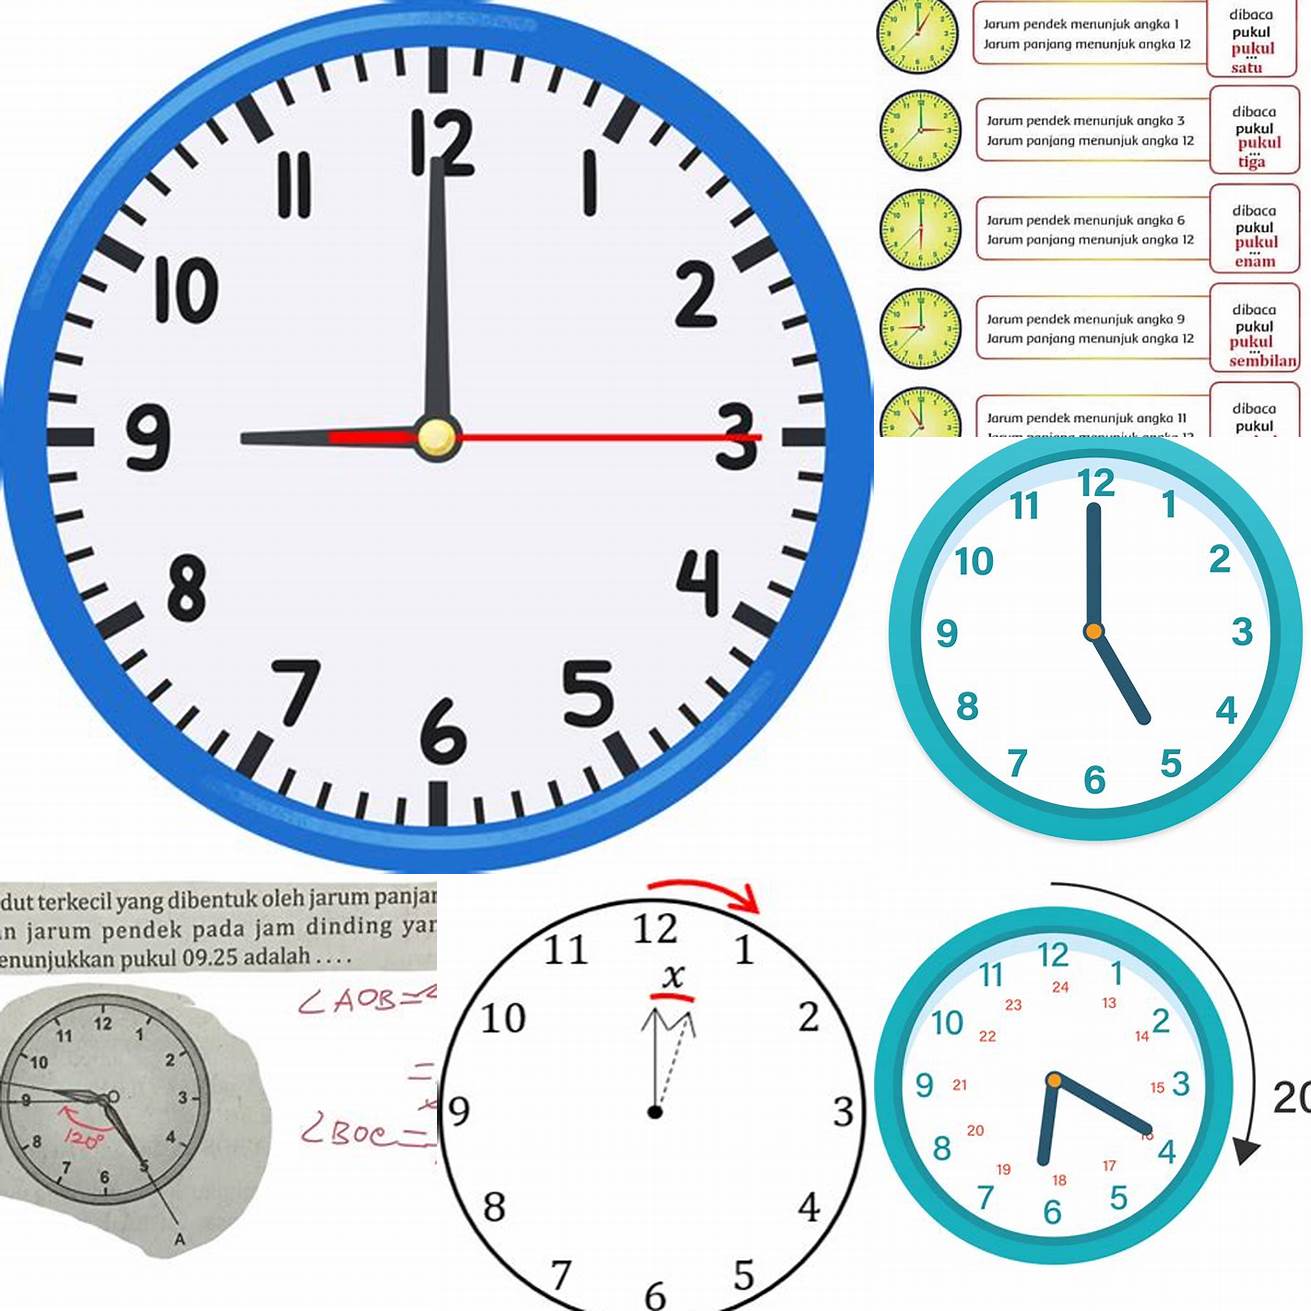 Jika jarum jam yang lebih pendek menunjukkan angka 12 dan jarum jam yang lebih panjang menunjukkan angka 3